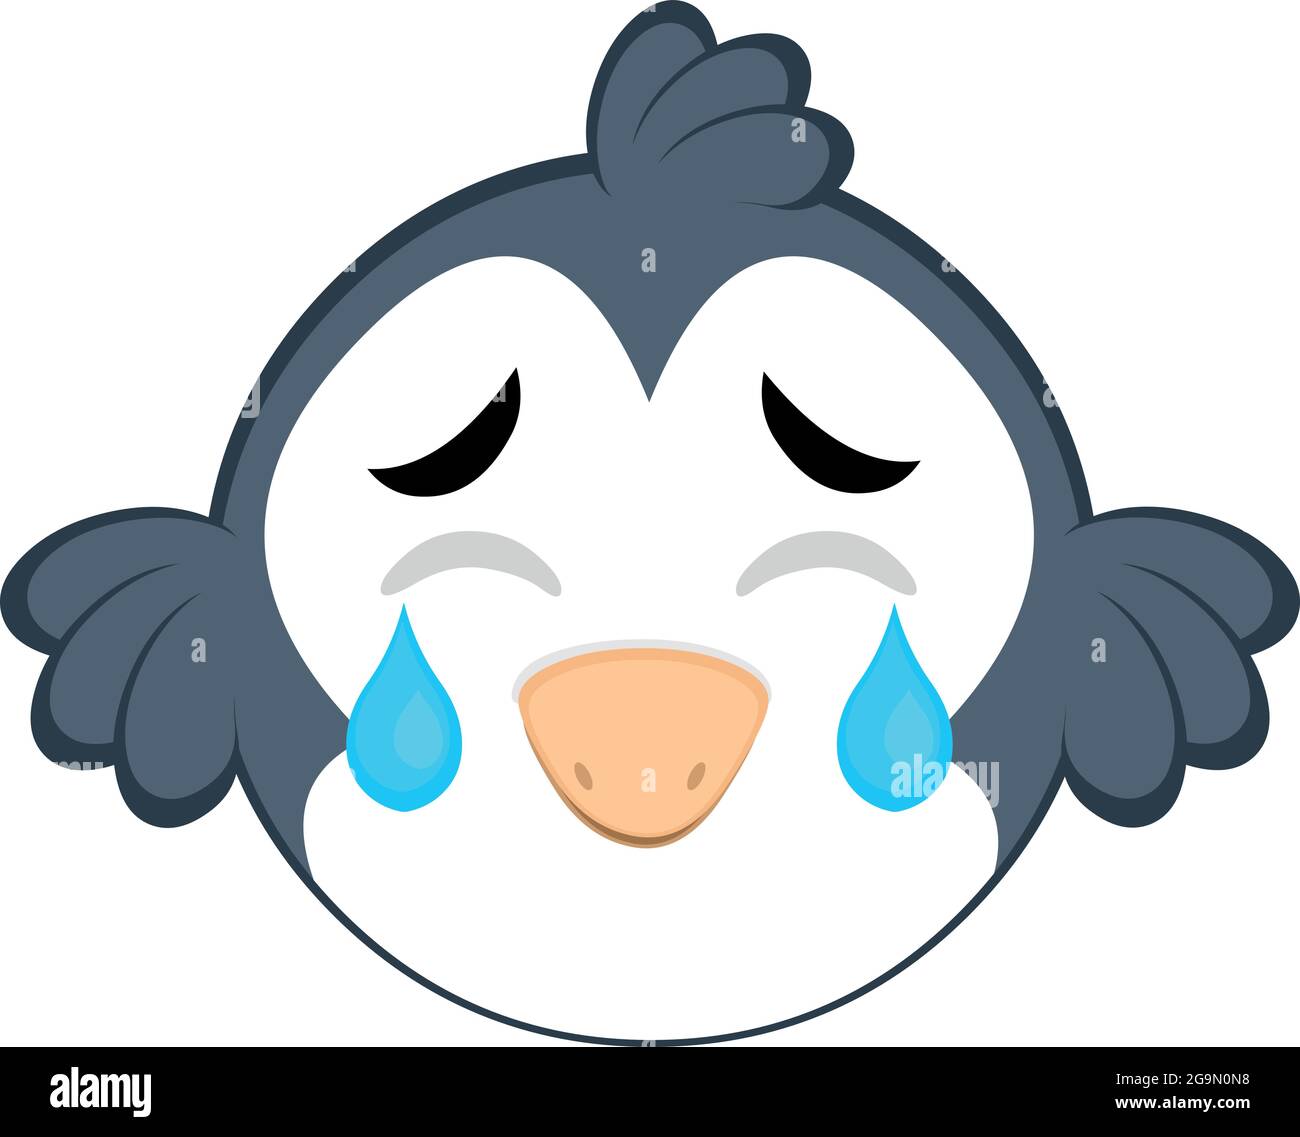 Vecteur émoticône illustration d'un oiseau de dessin animé avec une expression triste, pleurs et larmes tombant de ses yeux Illustration de Vecteur